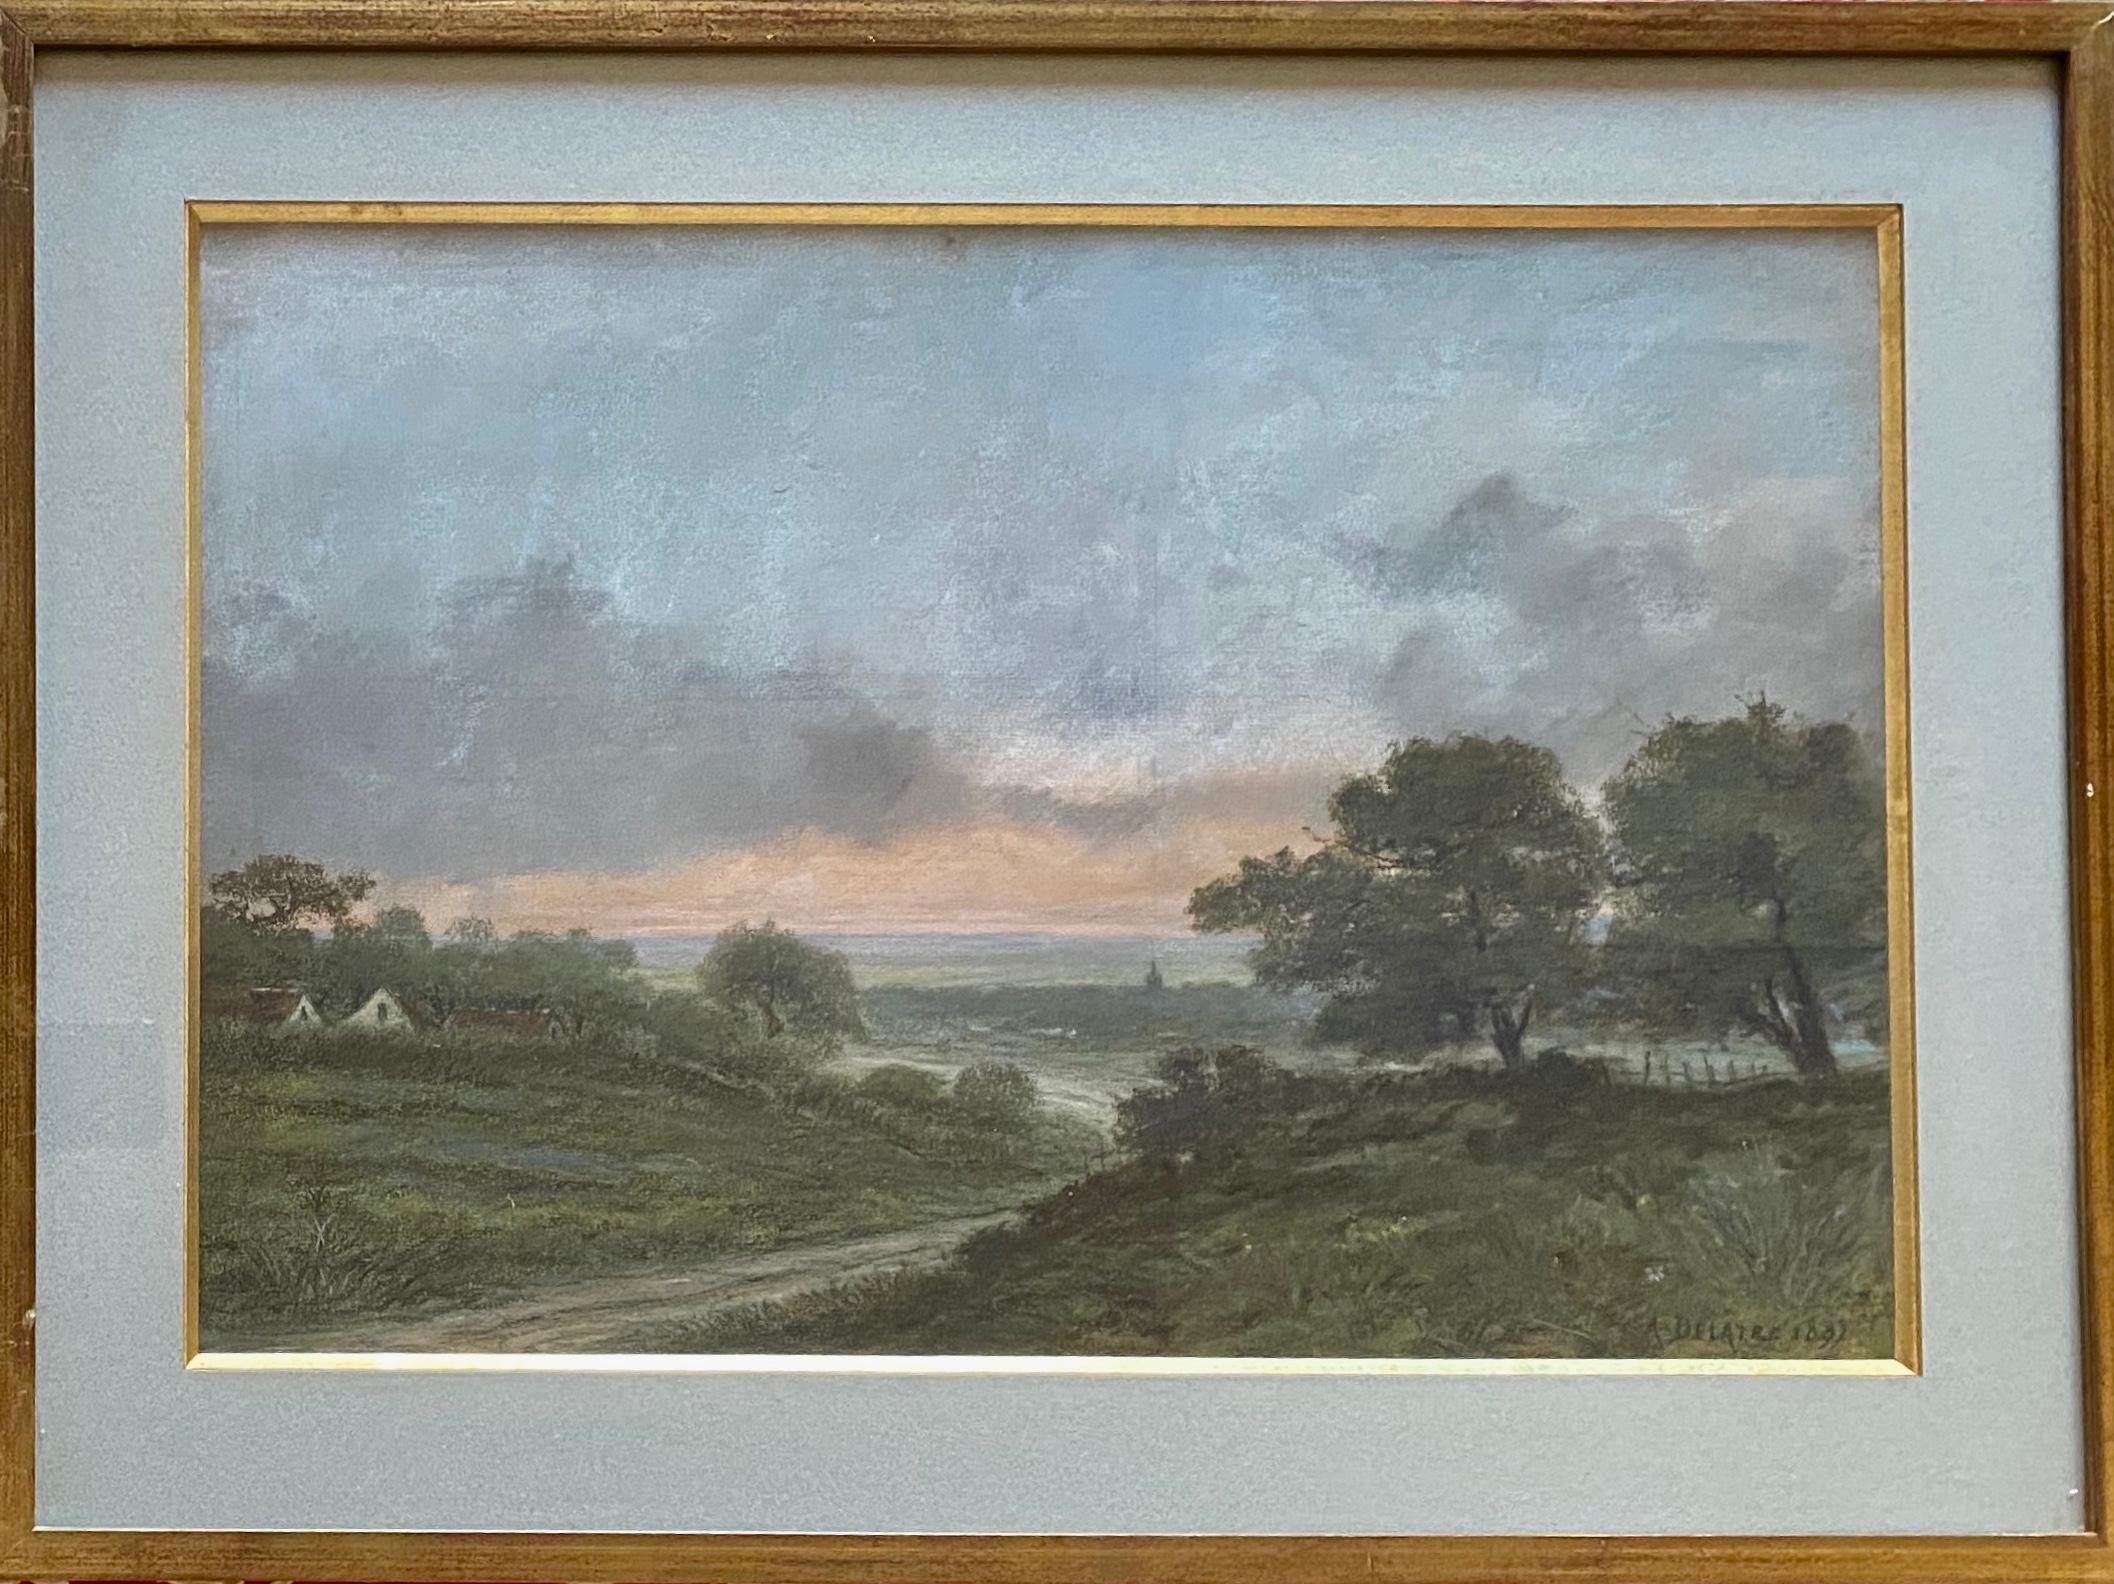 Landscape Art Auguste Delatre - Paysage d'été de Delâtre, l'ami artiste français de Whistler, connexion Barbizon